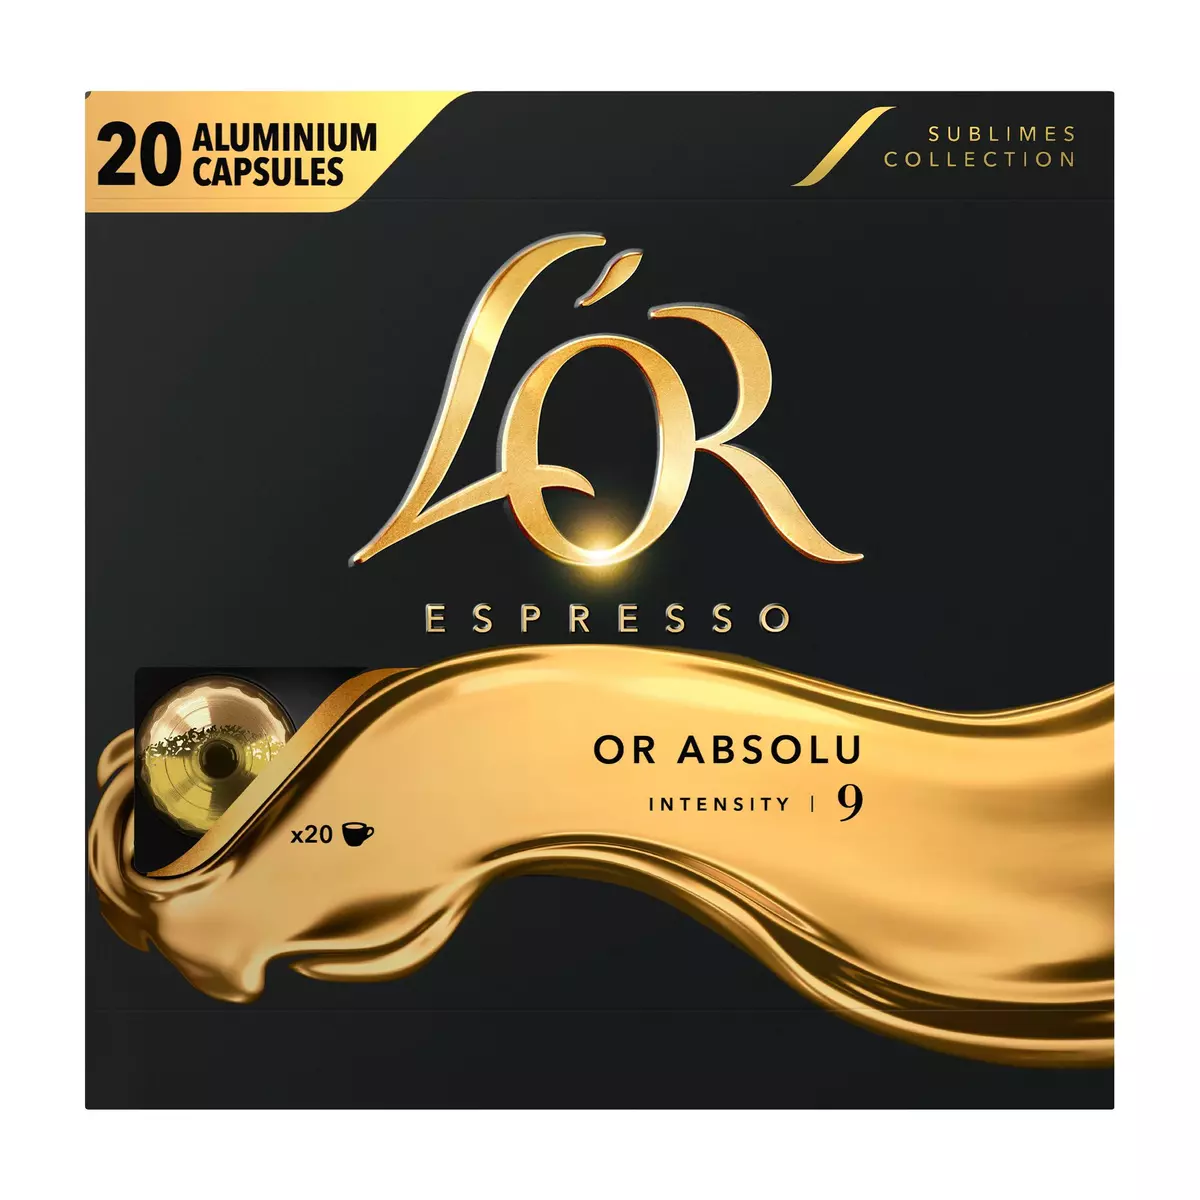 L'OR ESPRESSO Capsules de café or absolu intensité 9 compatibles Nespresso 20 capsules 104g